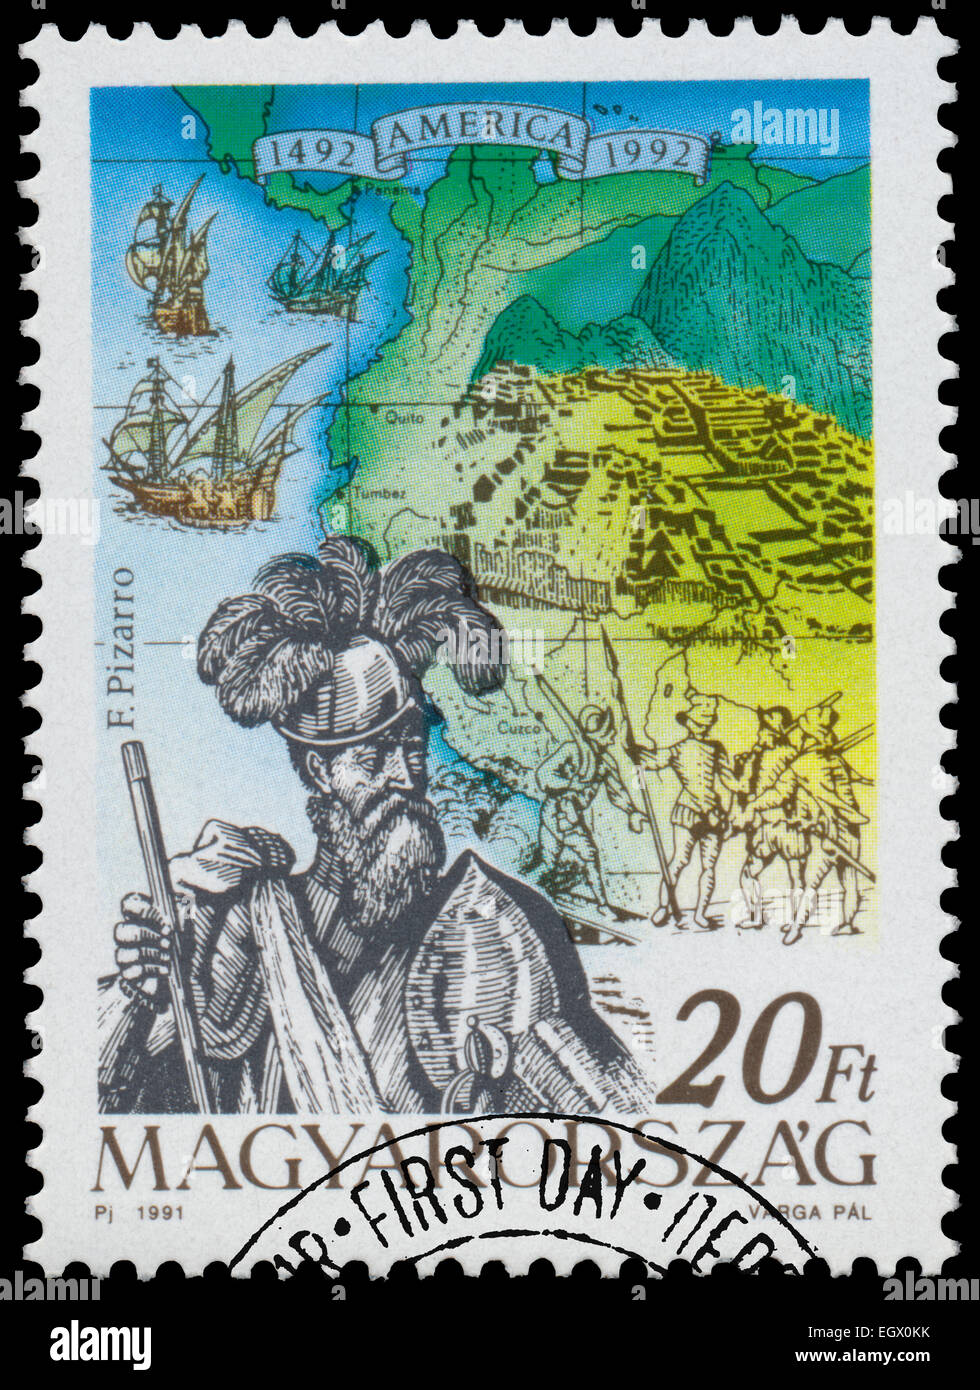 Ungarn - ca. 1991: Briefmarke gedruckt in Ungarn aus der Ausgabe zeigt der 500. Jahrestag der Entdeckung Amerikas F. Pizarr Stockfoto